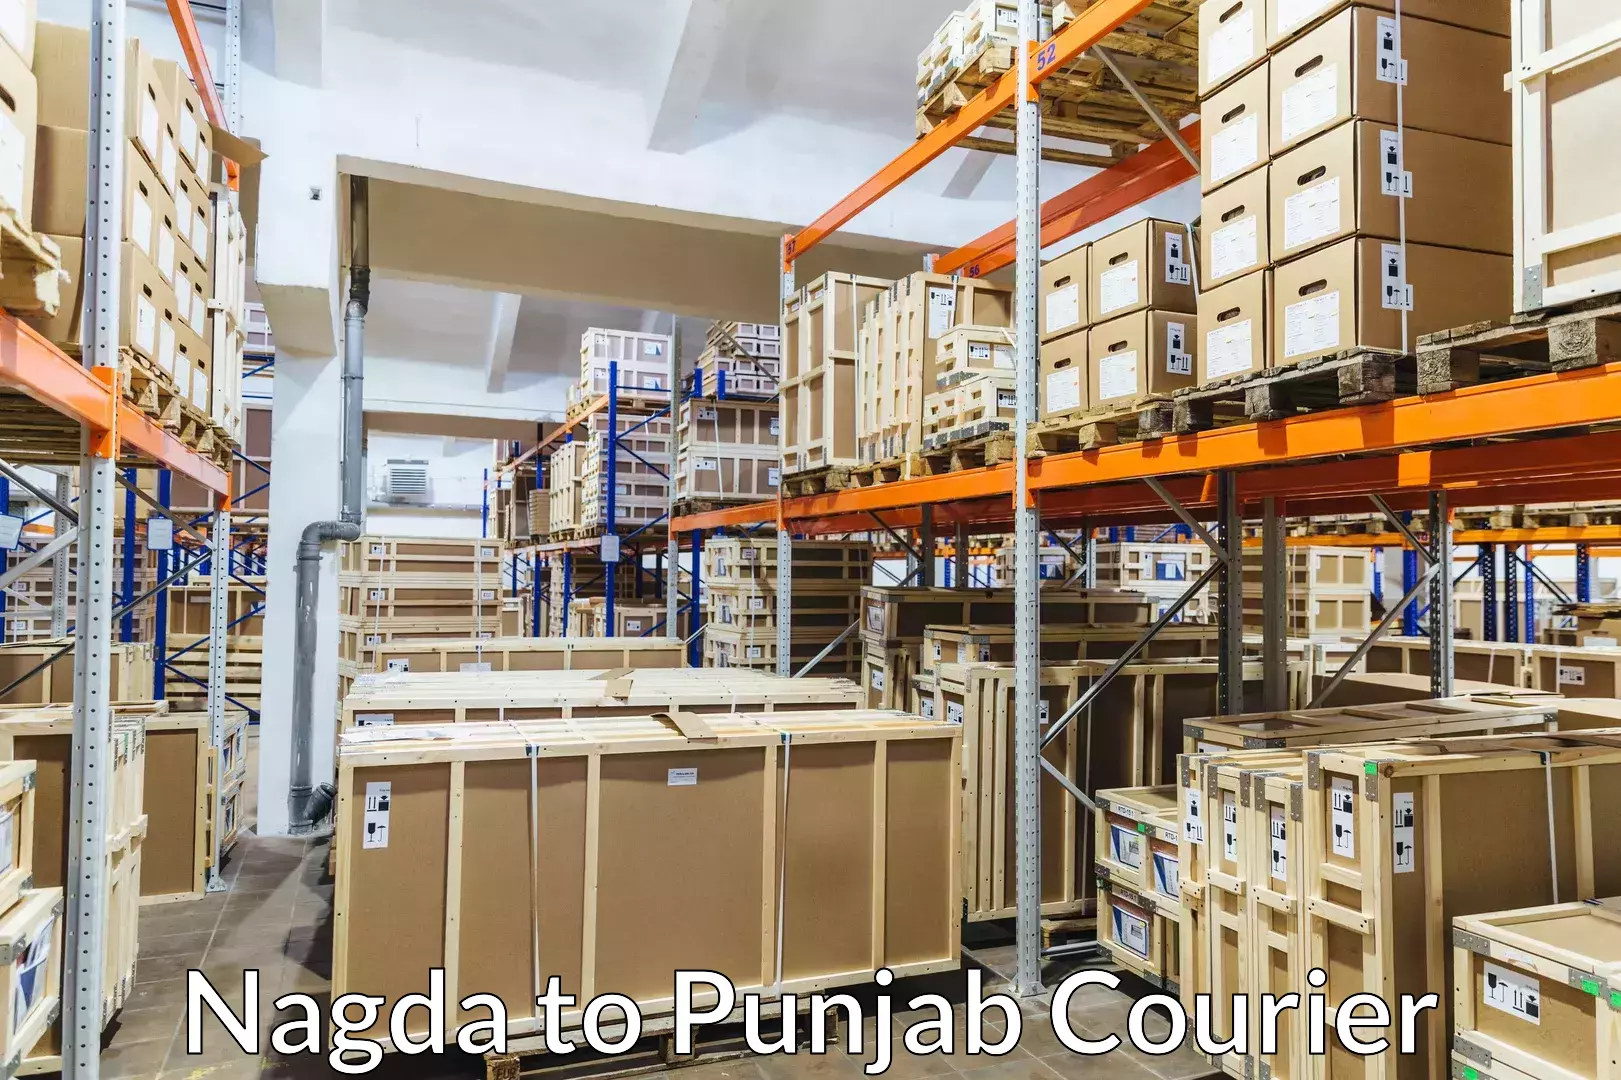 Baggage courier solutions Nagda to Phagwara